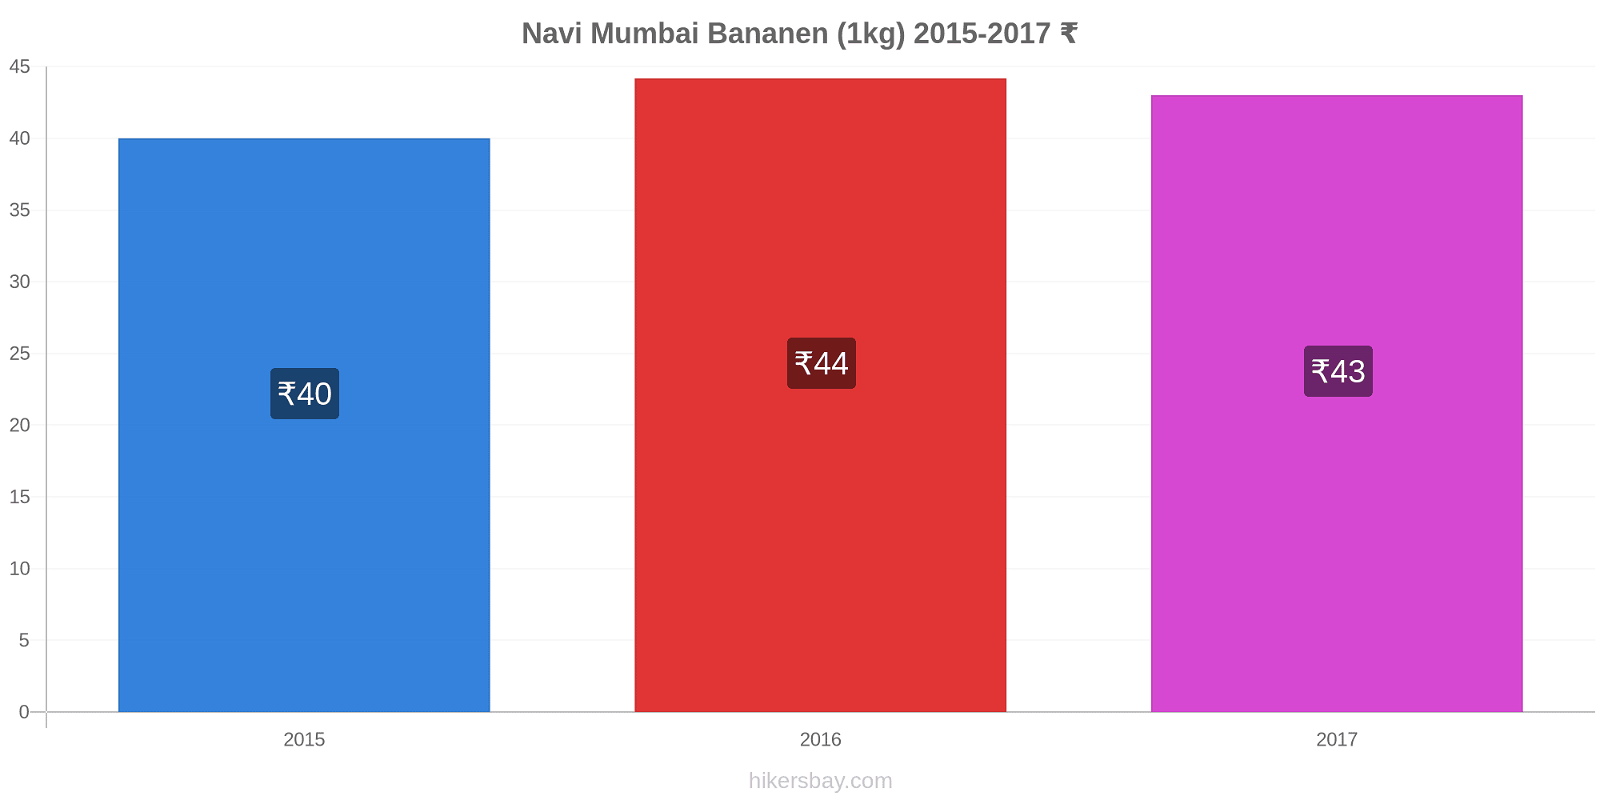 Navi Mumbai prijswijzigingen Banaan (1kg) hikersbay.com